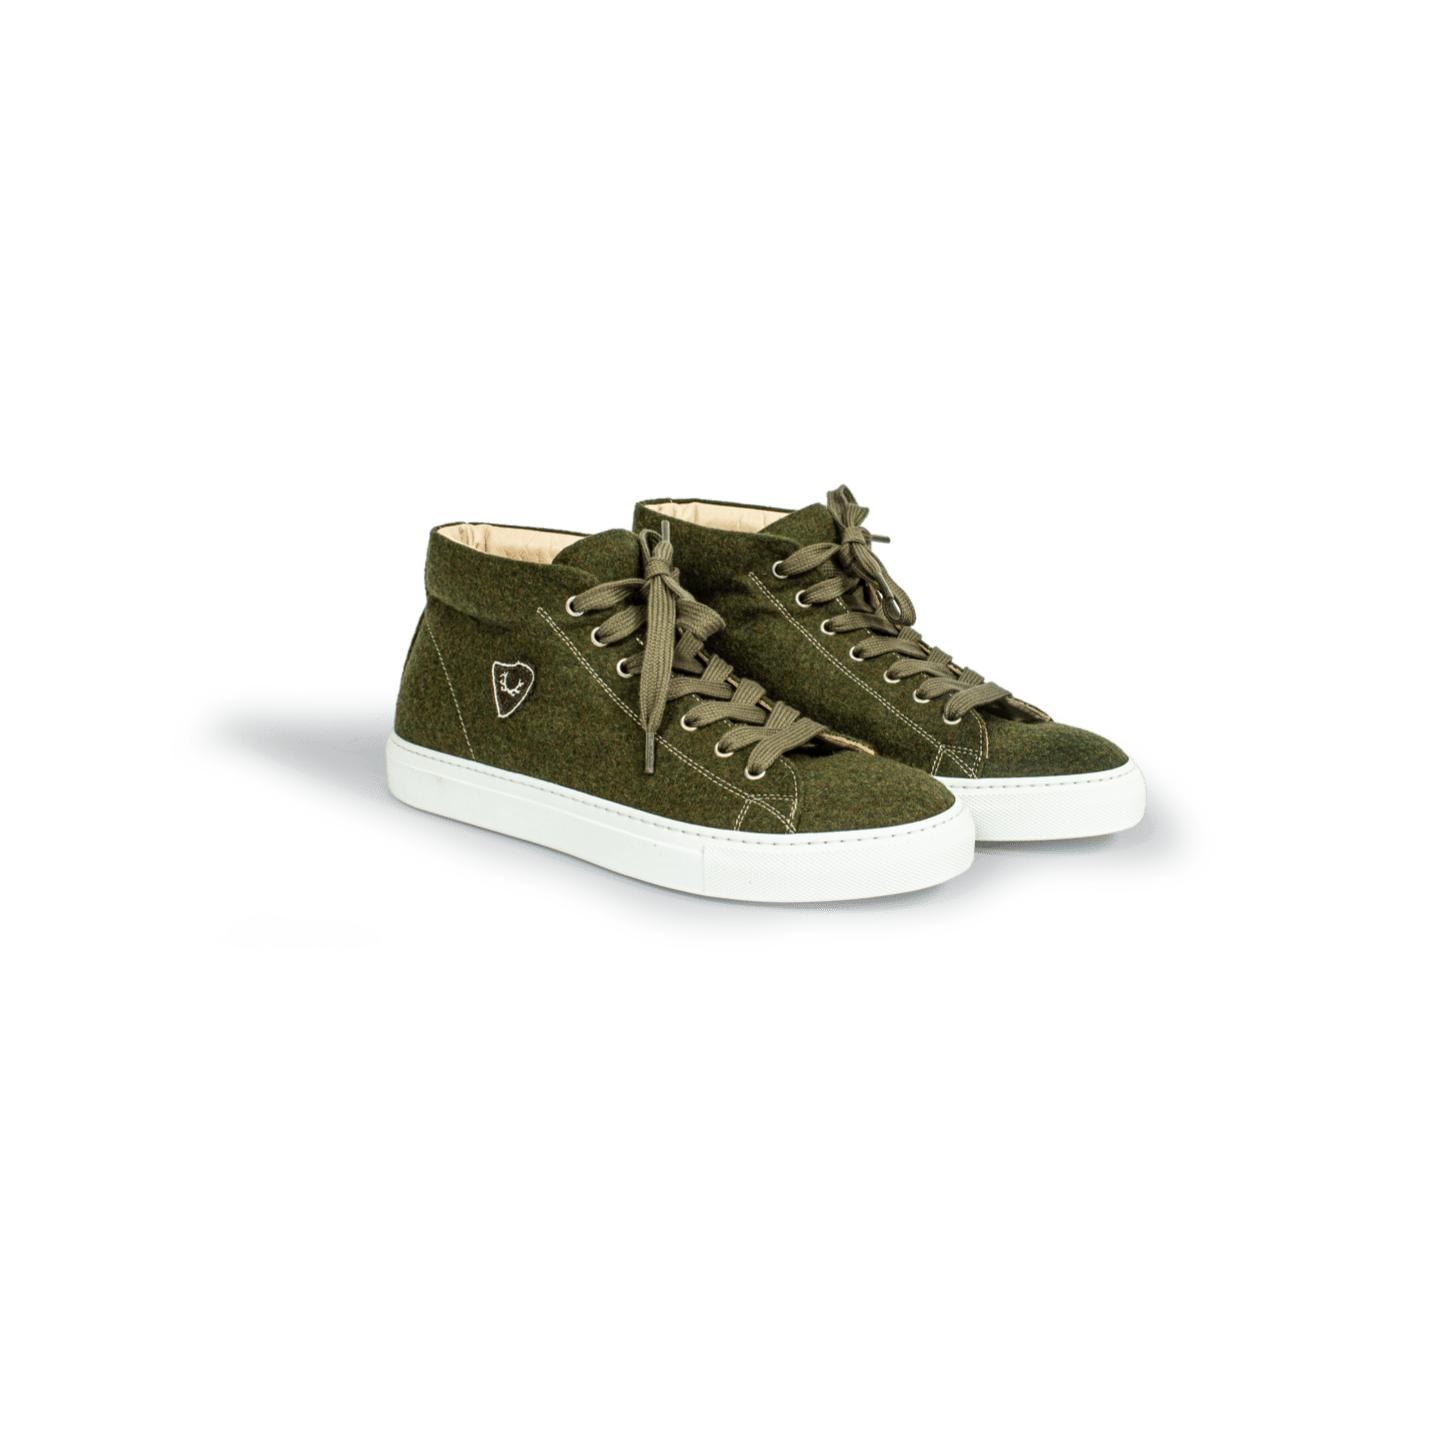 Strizi Schuhe Sneaker grün midcut 2 Strizi